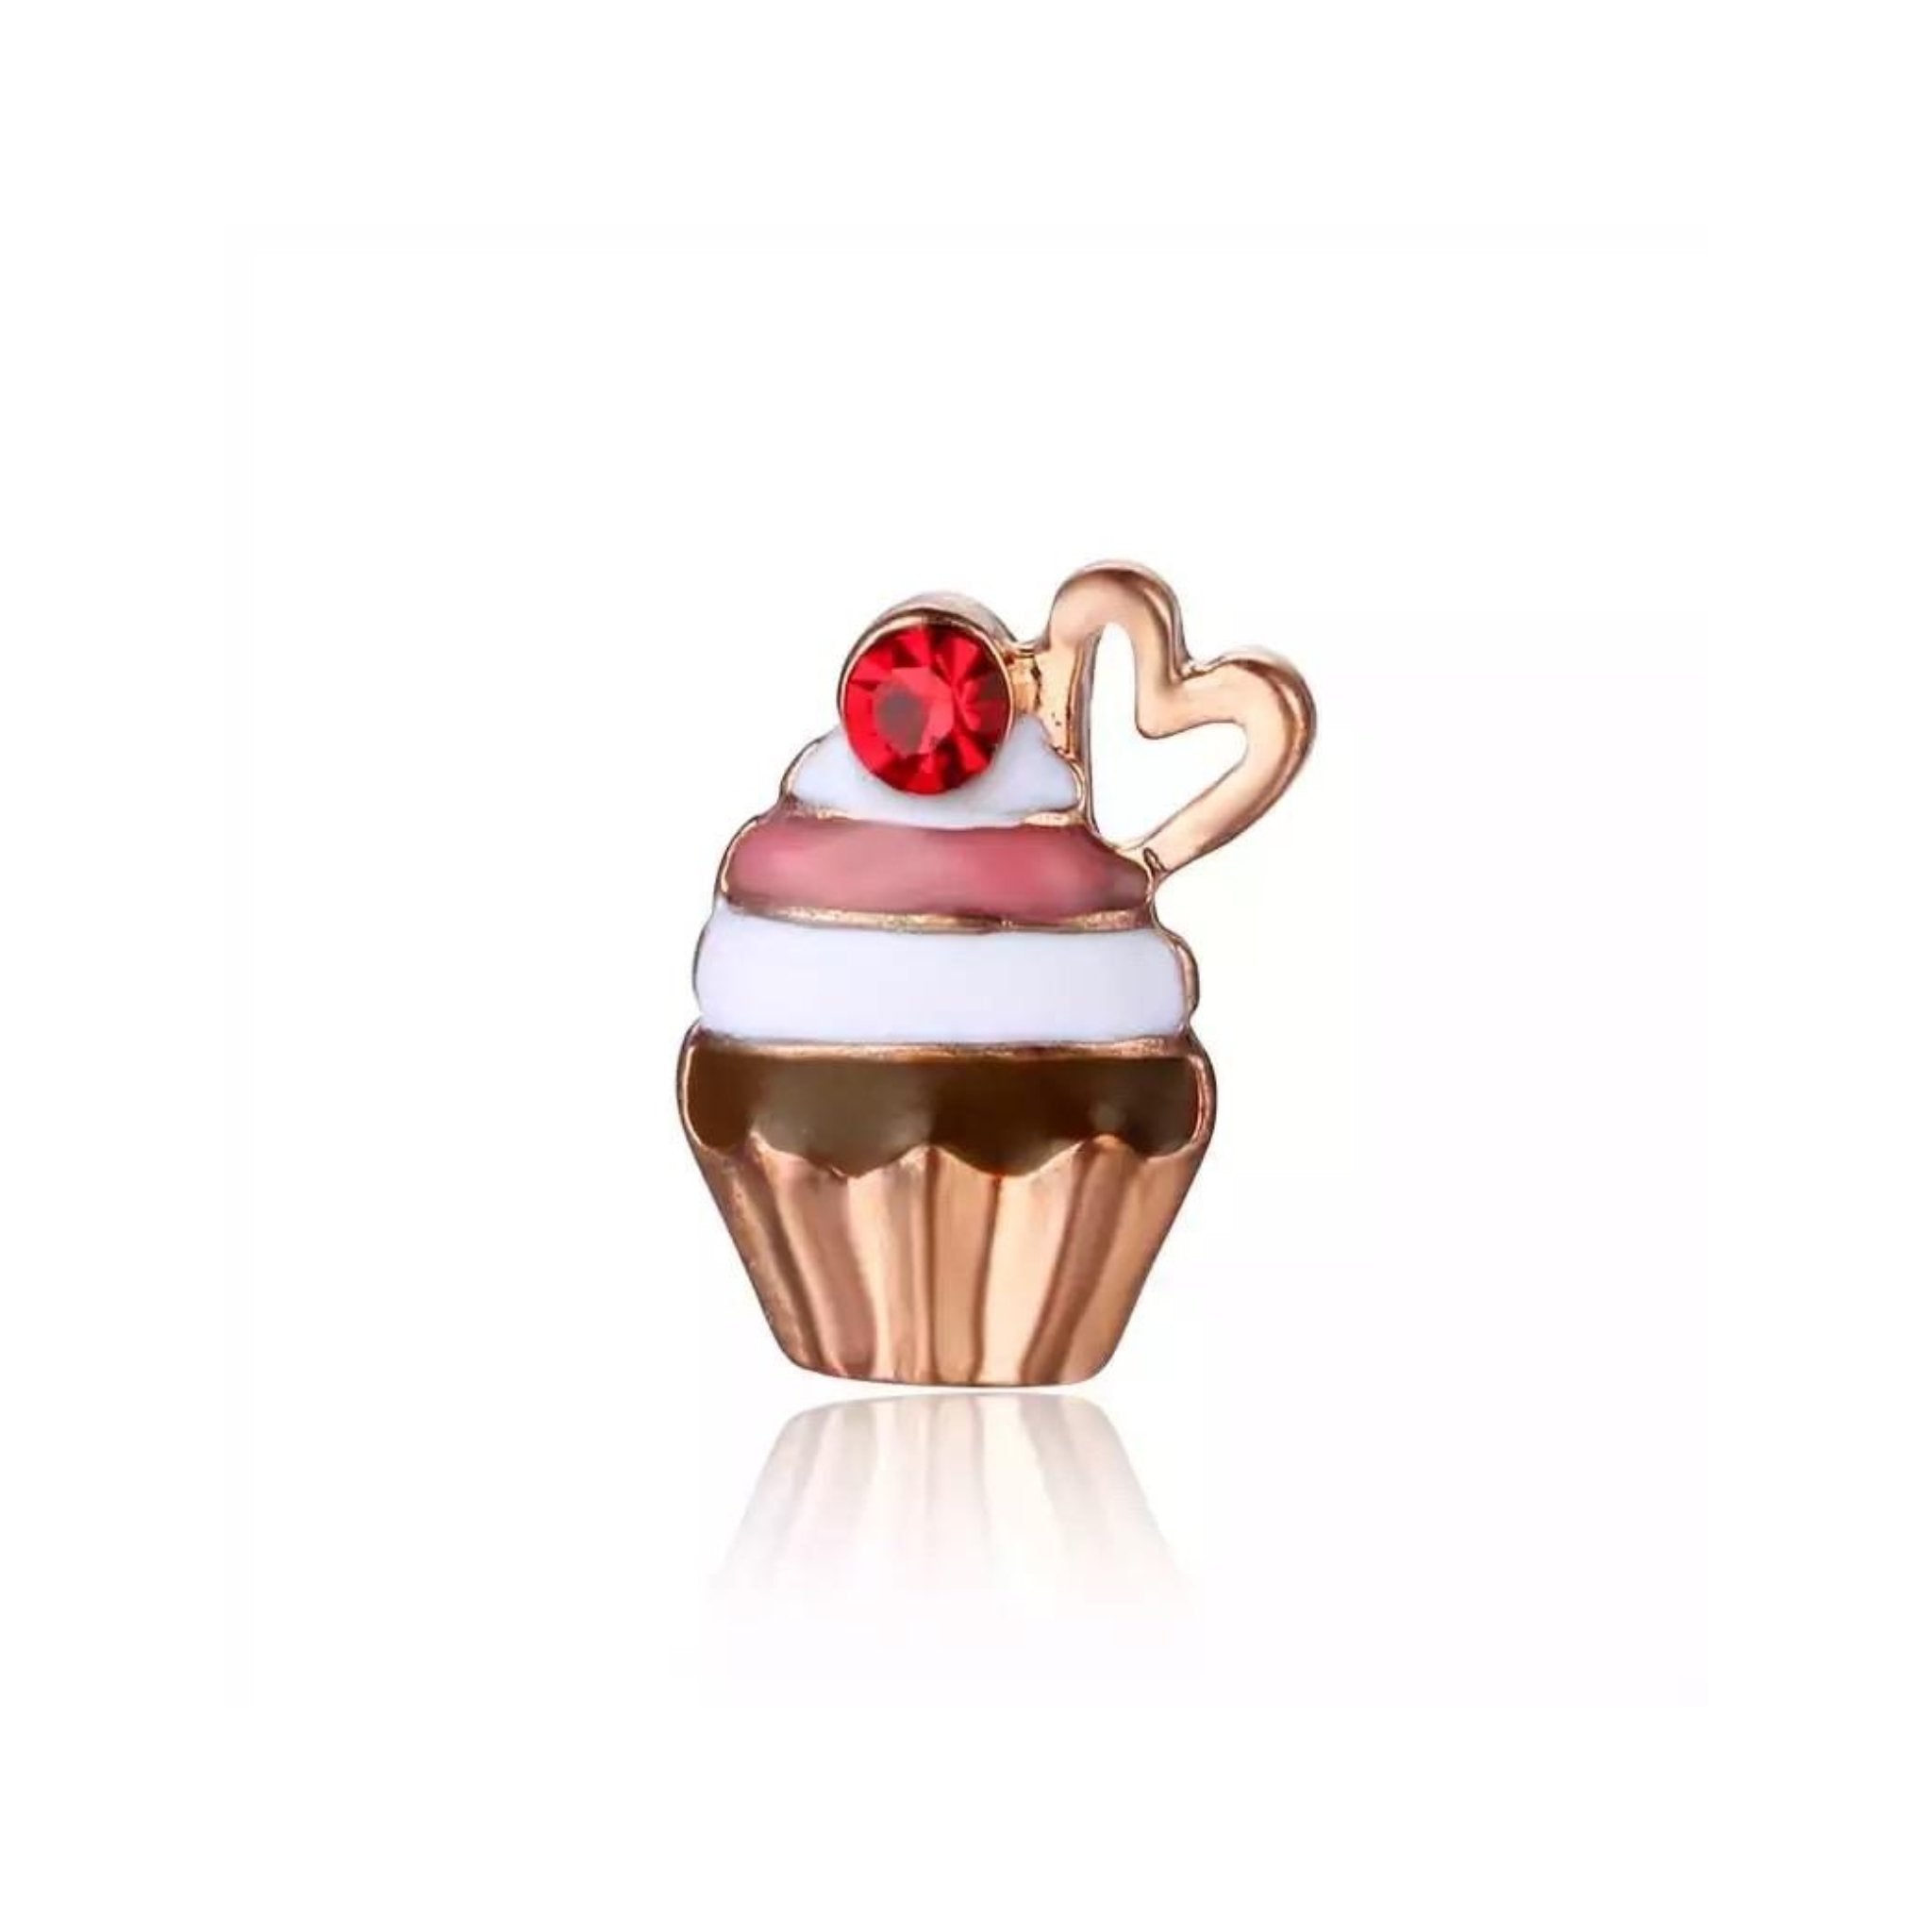 Memory Locket Charm - Cherry Cupcake